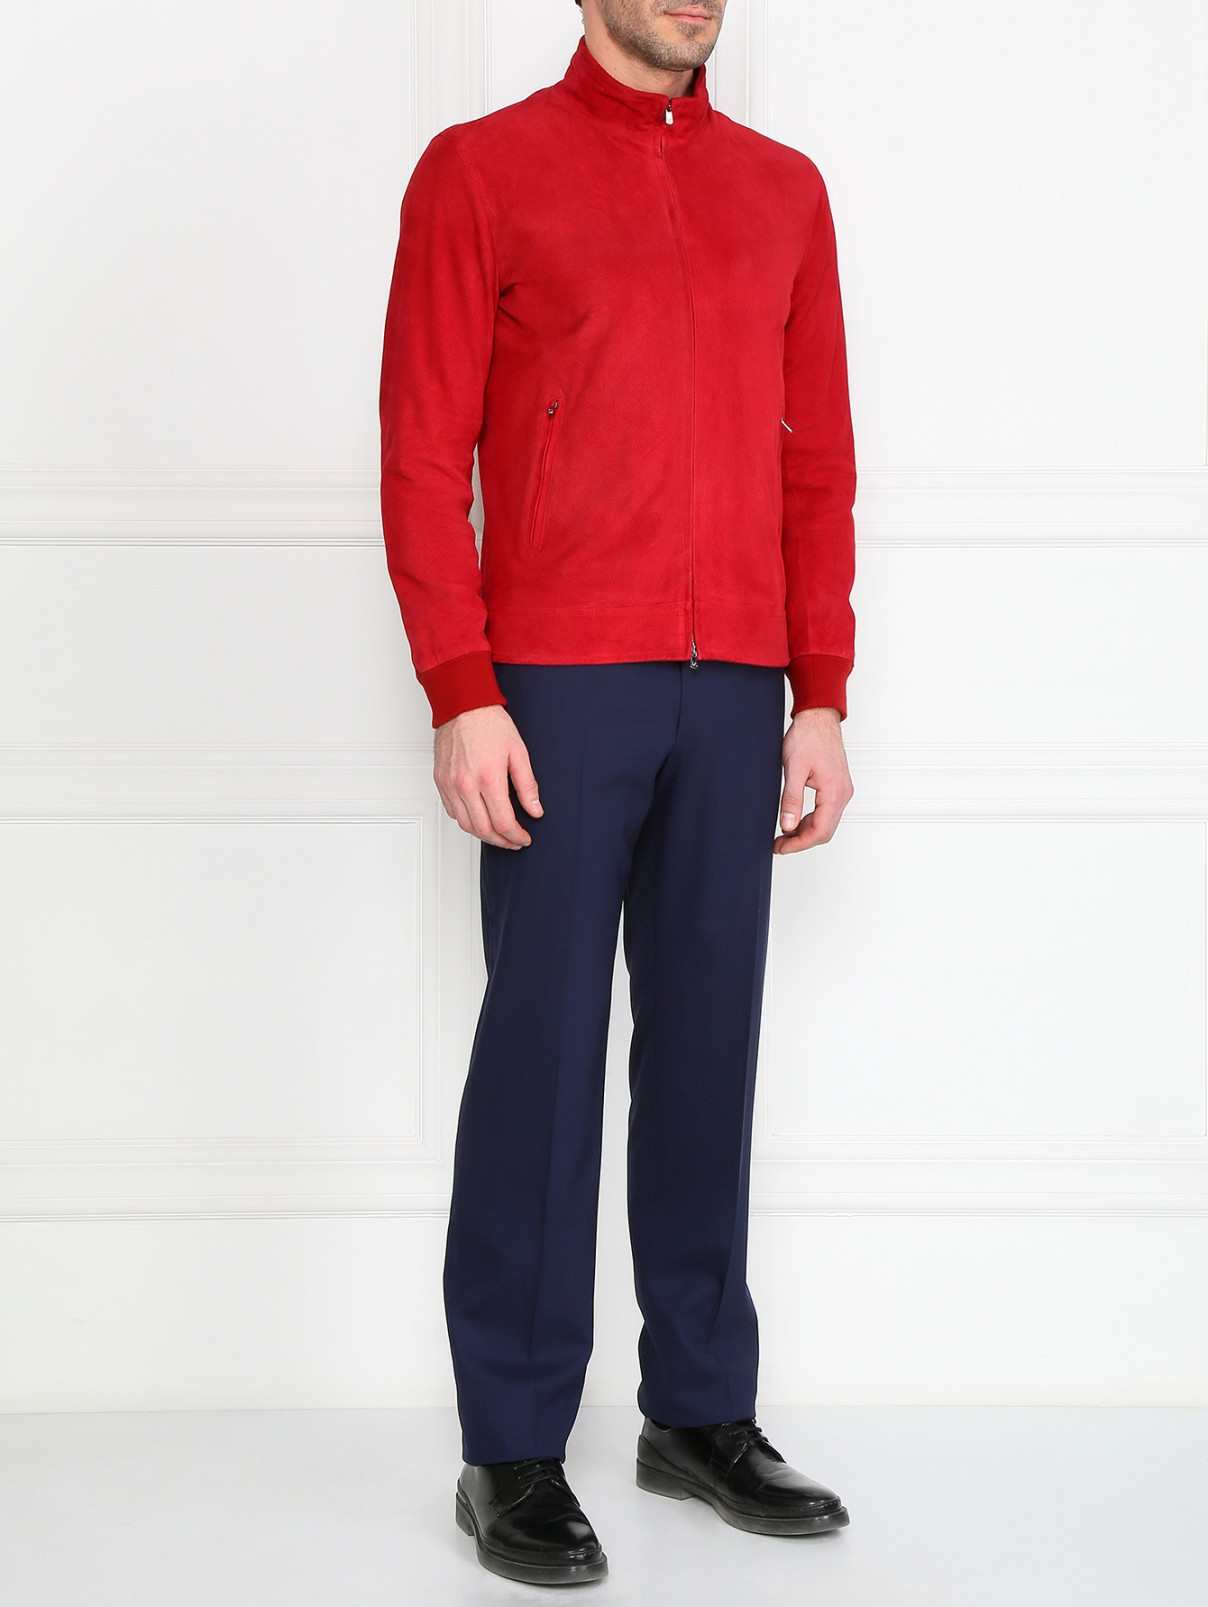 Куртка из перфорированной кожи Isaia  –  Модель Общий вид  – Цвет:  Красный